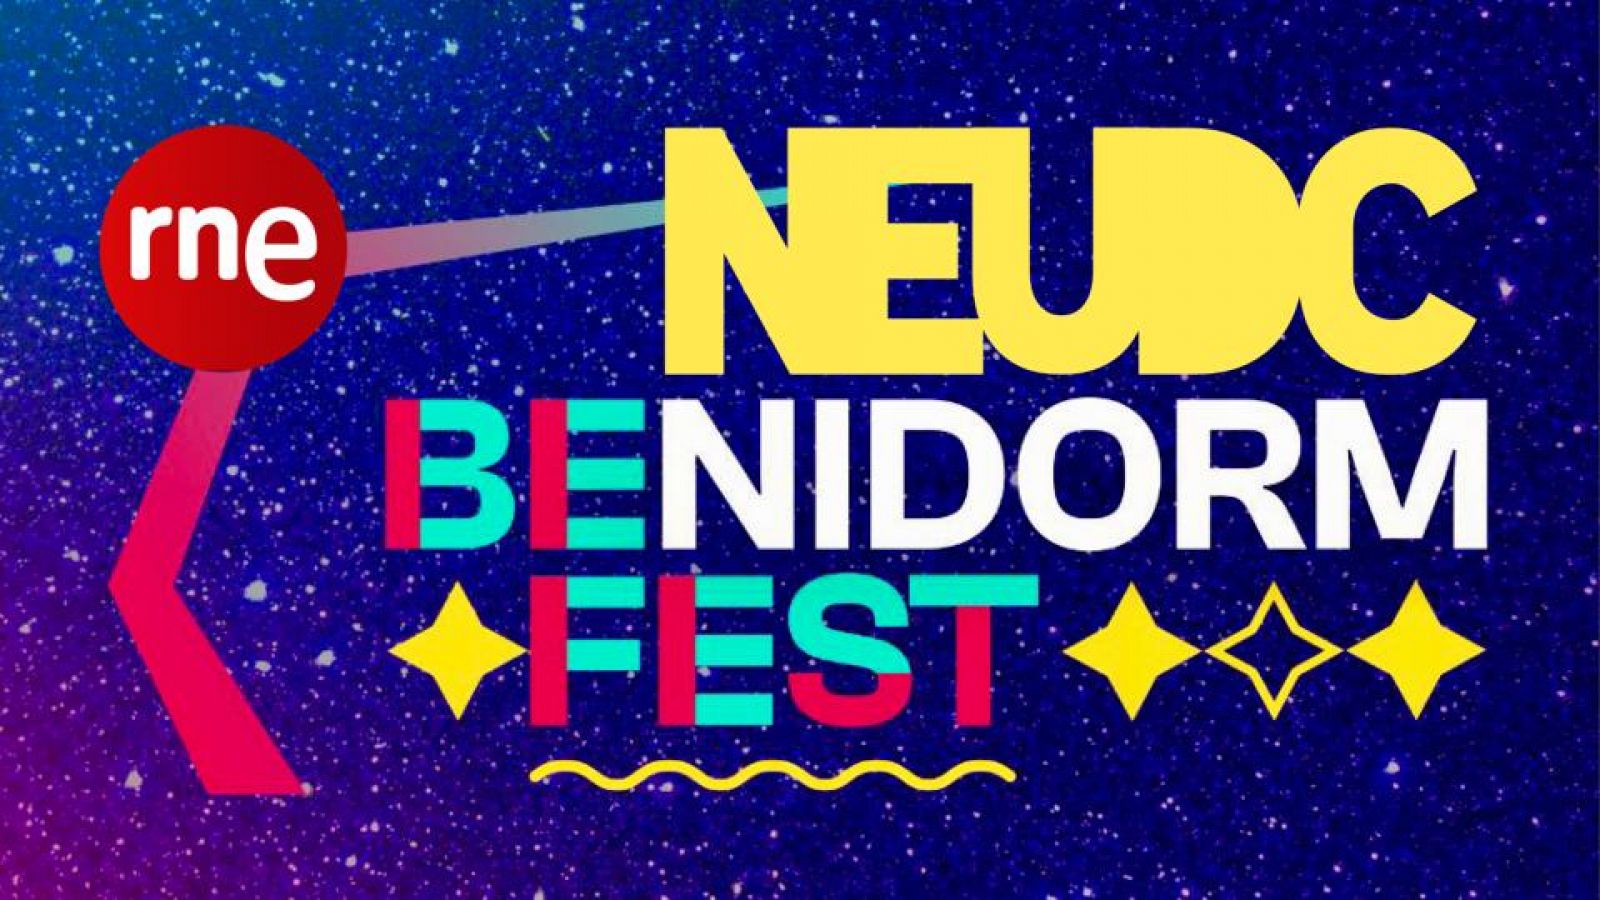 'No es un día cualquiera' calienta motores para el Benidorm Fest